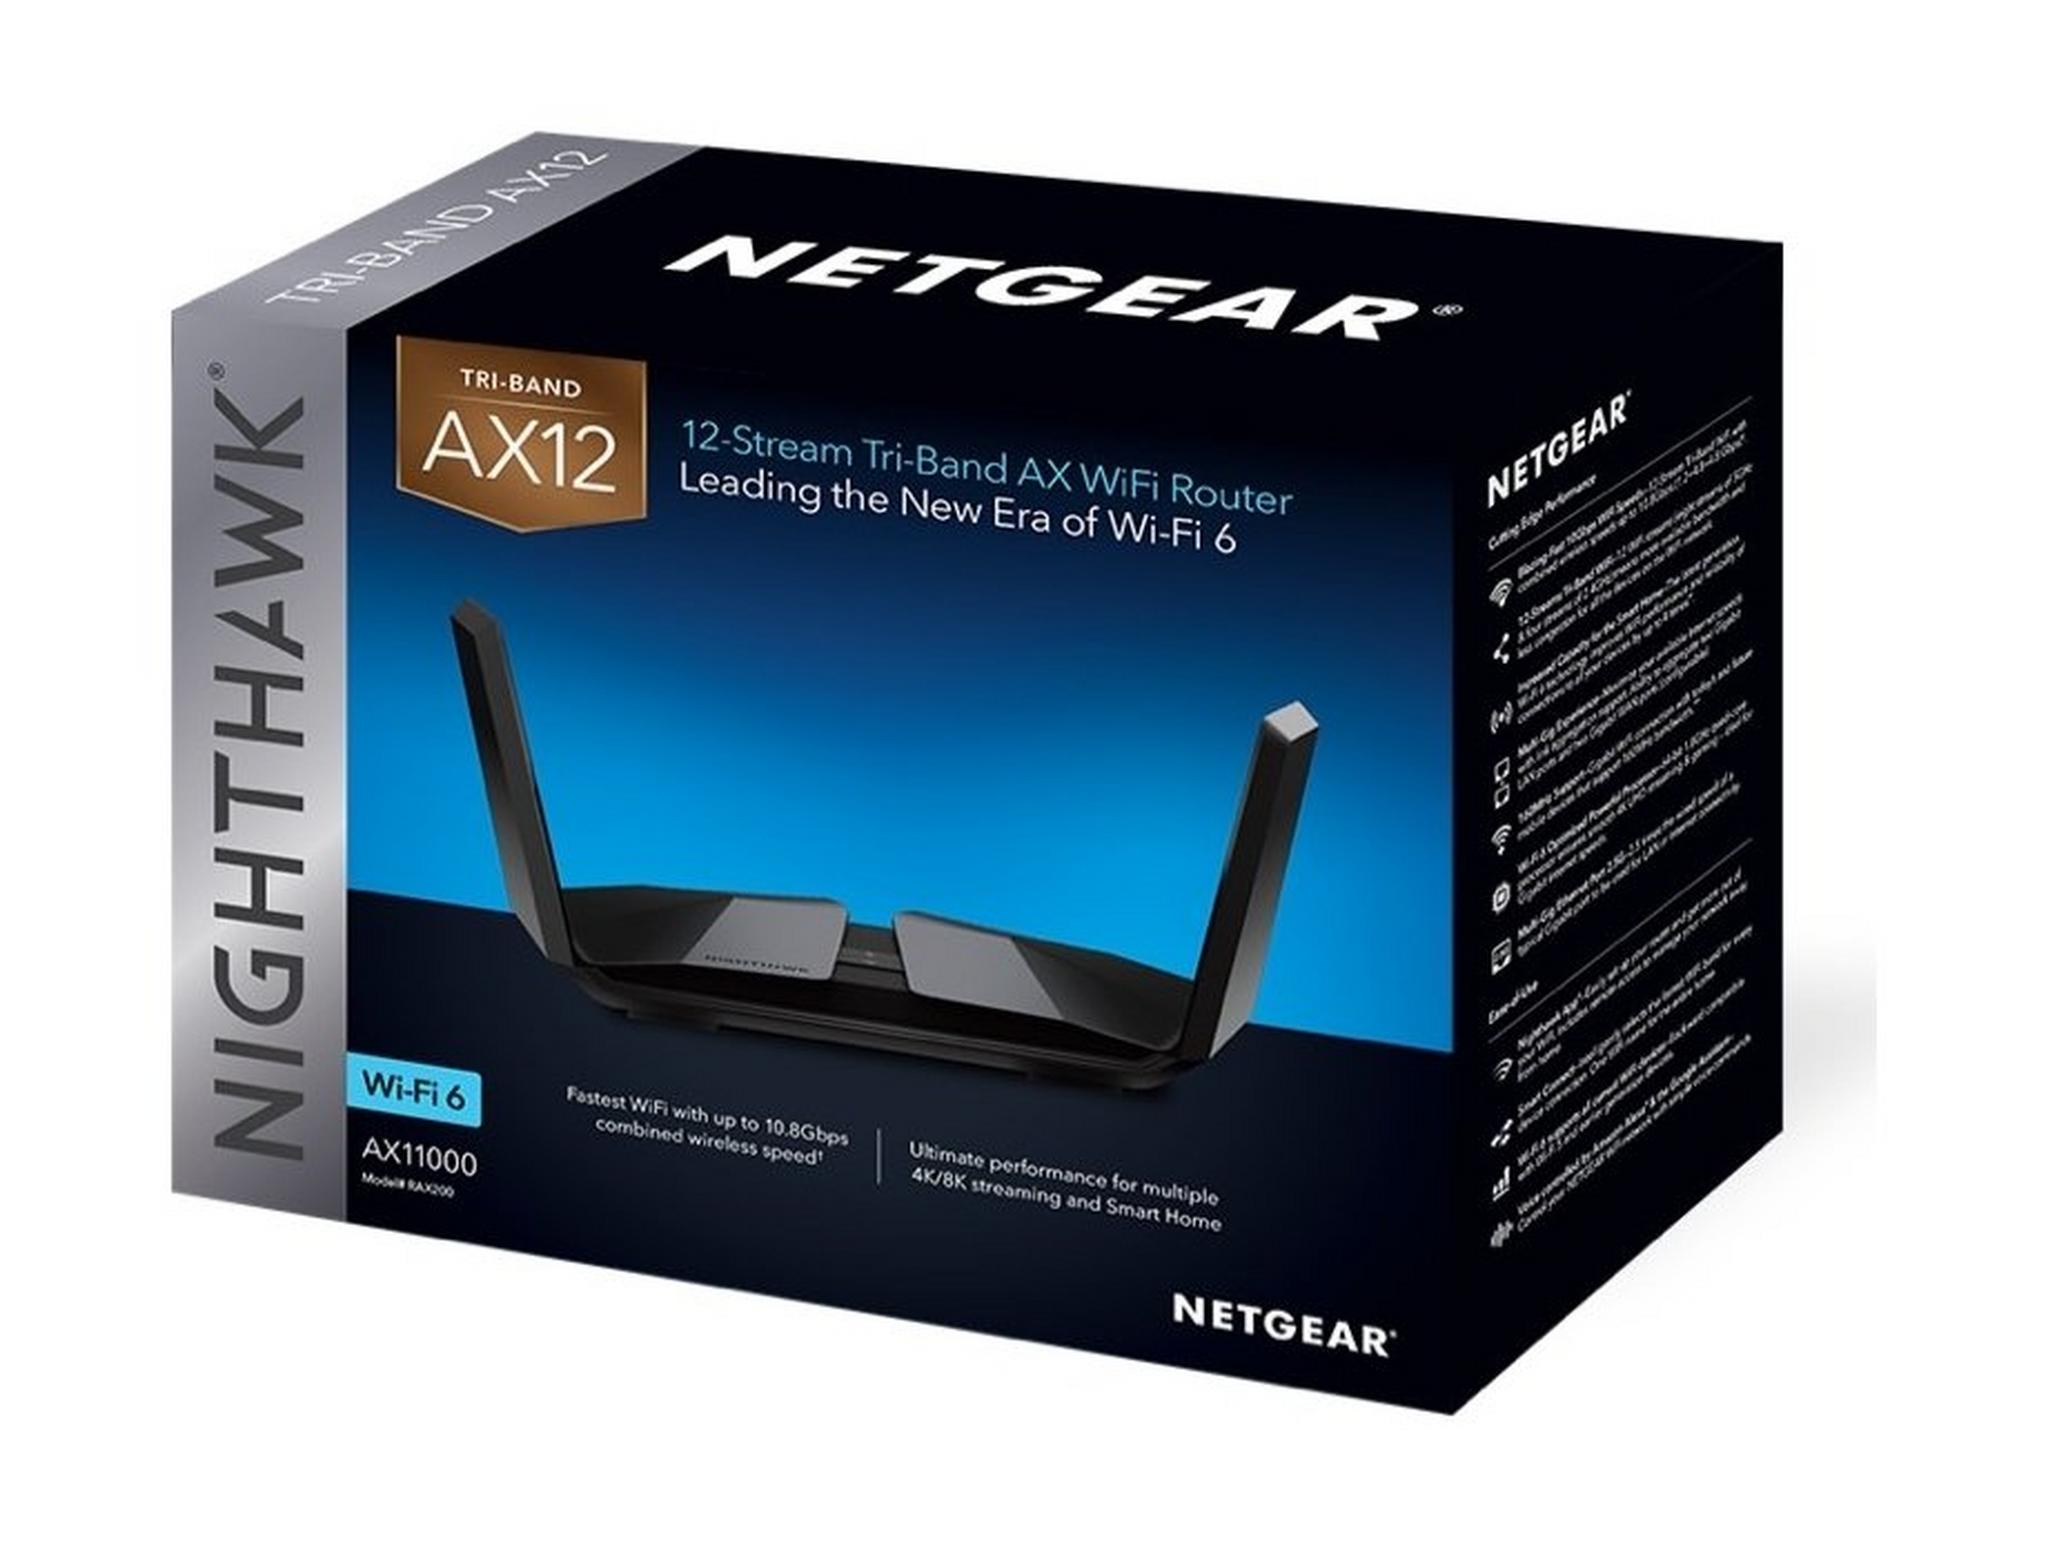 Netgear Nighthawk Tri-Band AX12 12-Stream WiFi Router